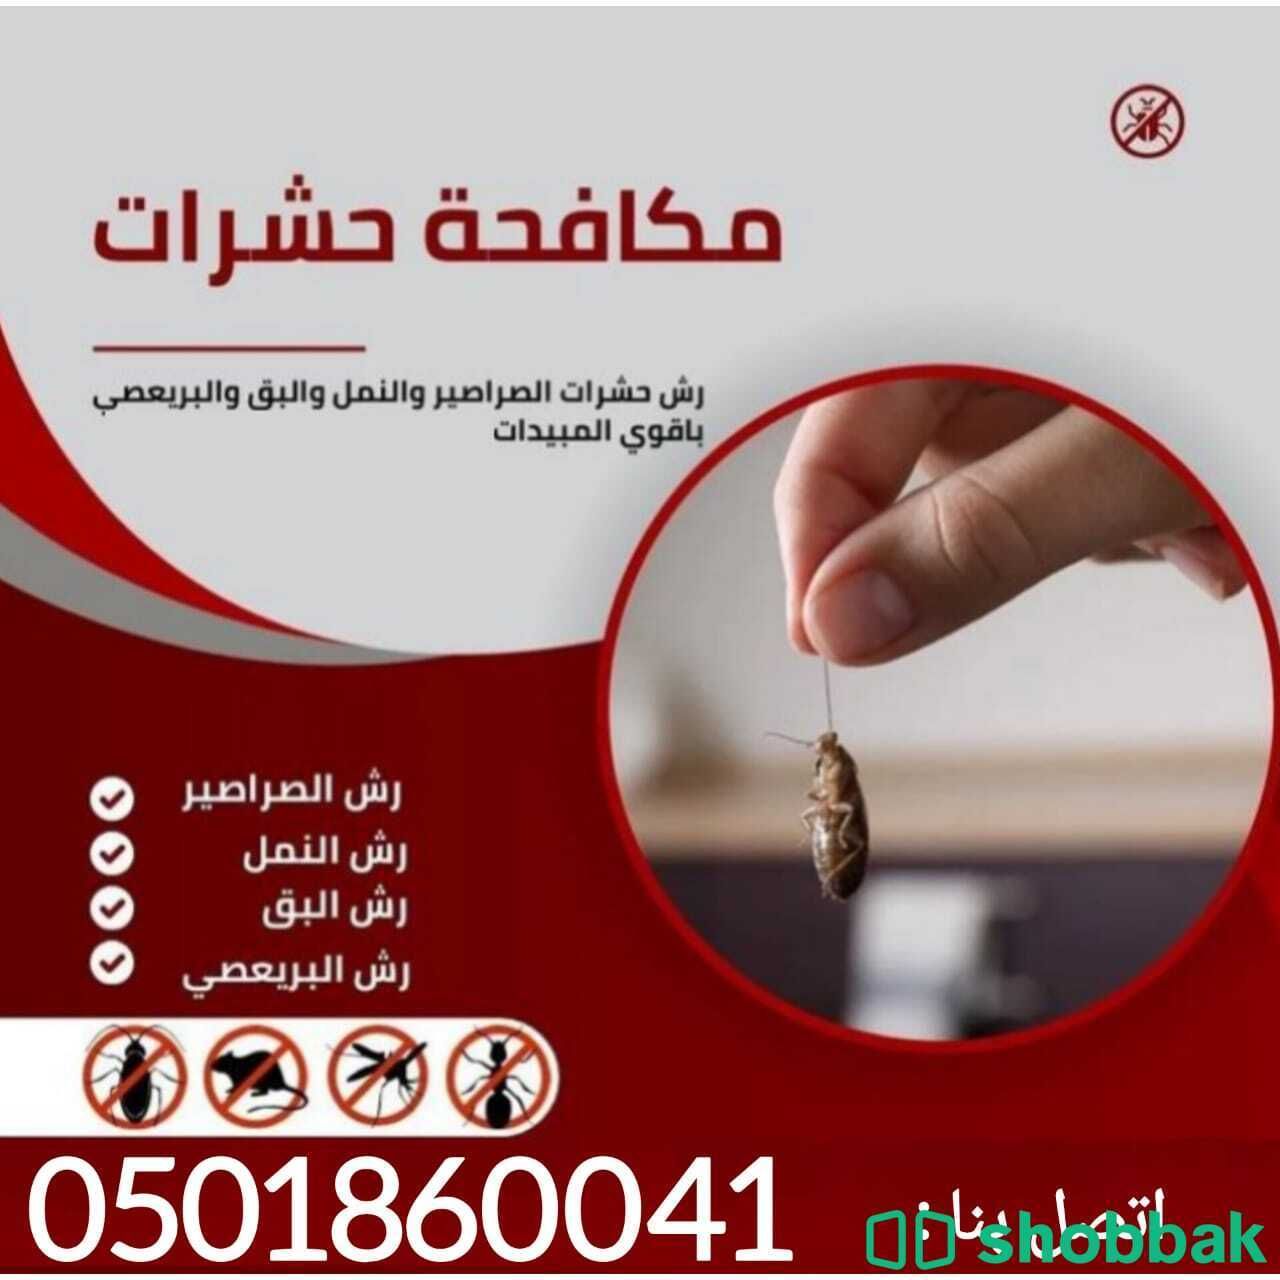 شركة مكافحة حشرات بالرياض  Shobbak Saudi Arabia